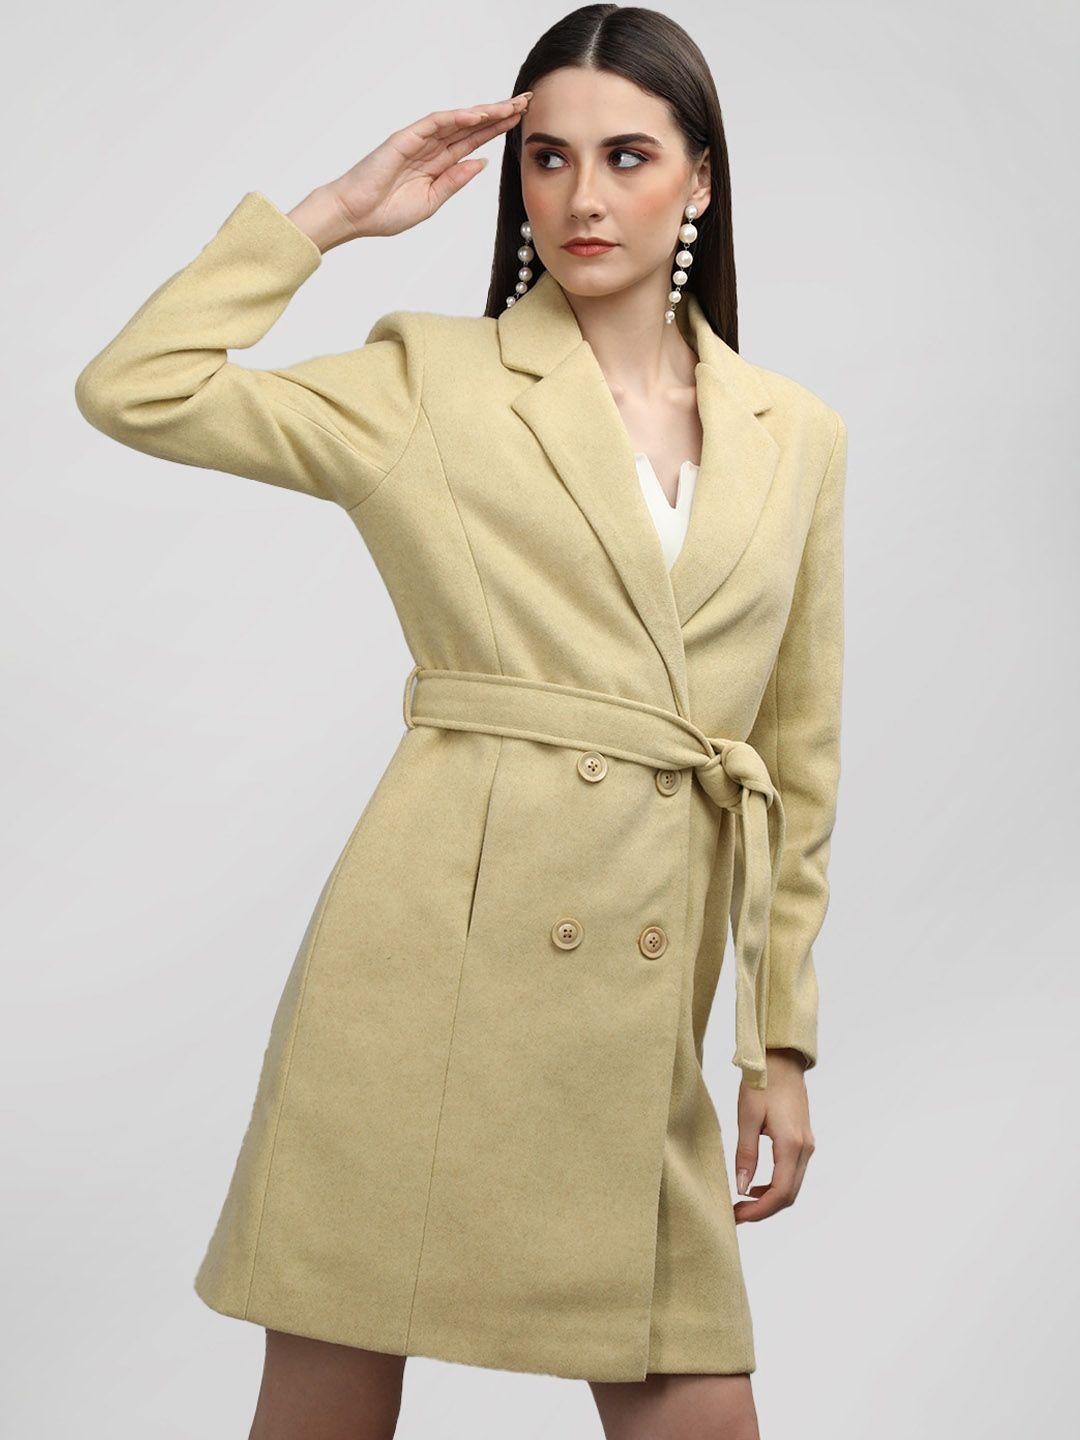 dlanxa wool double-breasted stylish coat